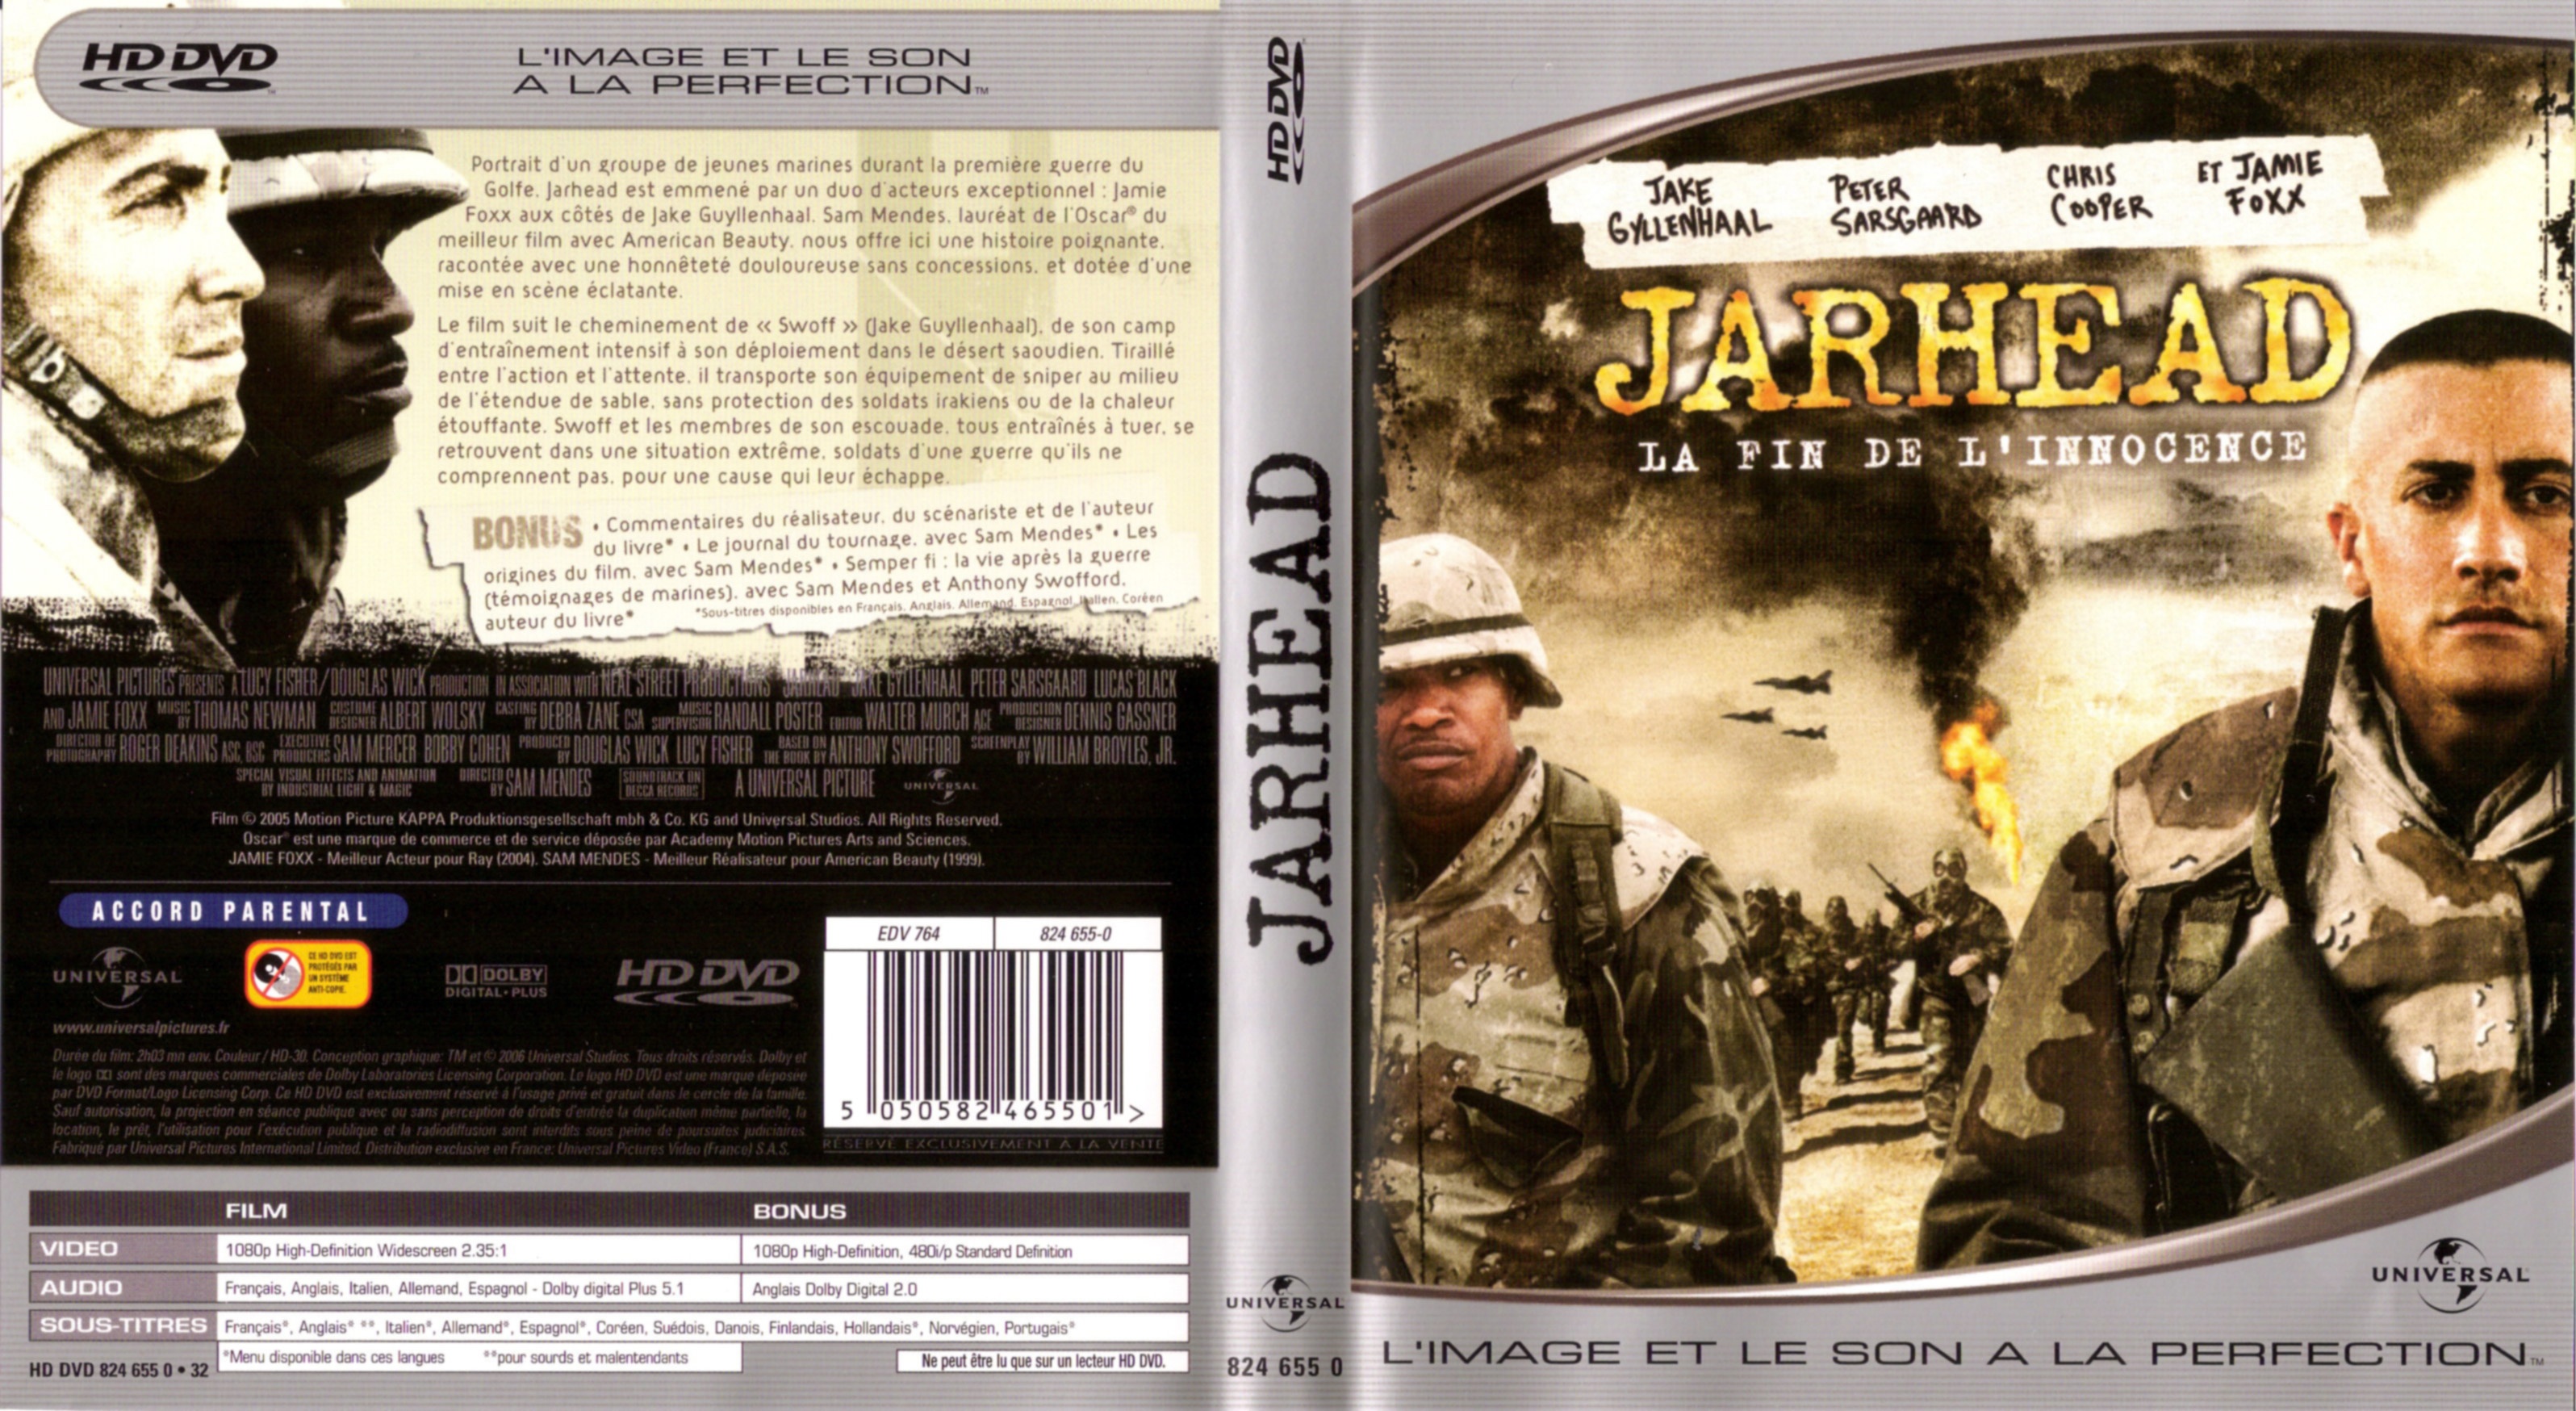 Jaquette DVD Jarhead (HD-DVD)